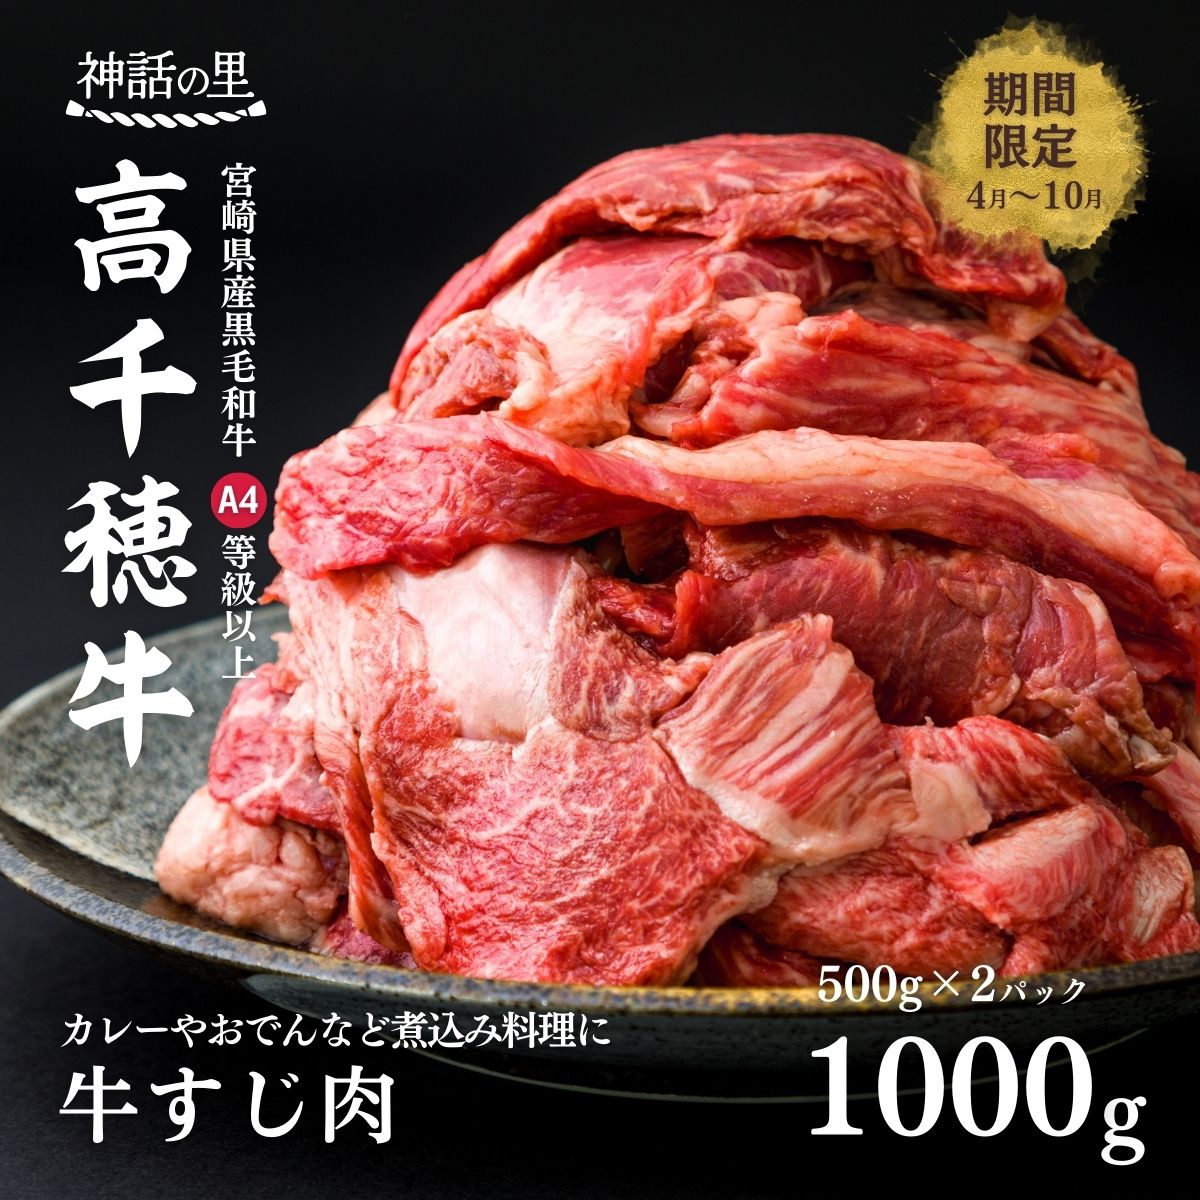 宮崎県産黒毛和牛A4等級以上 高千穂牛すじ 500g×2パック 計1kg 煮込み料理 カレー おでん